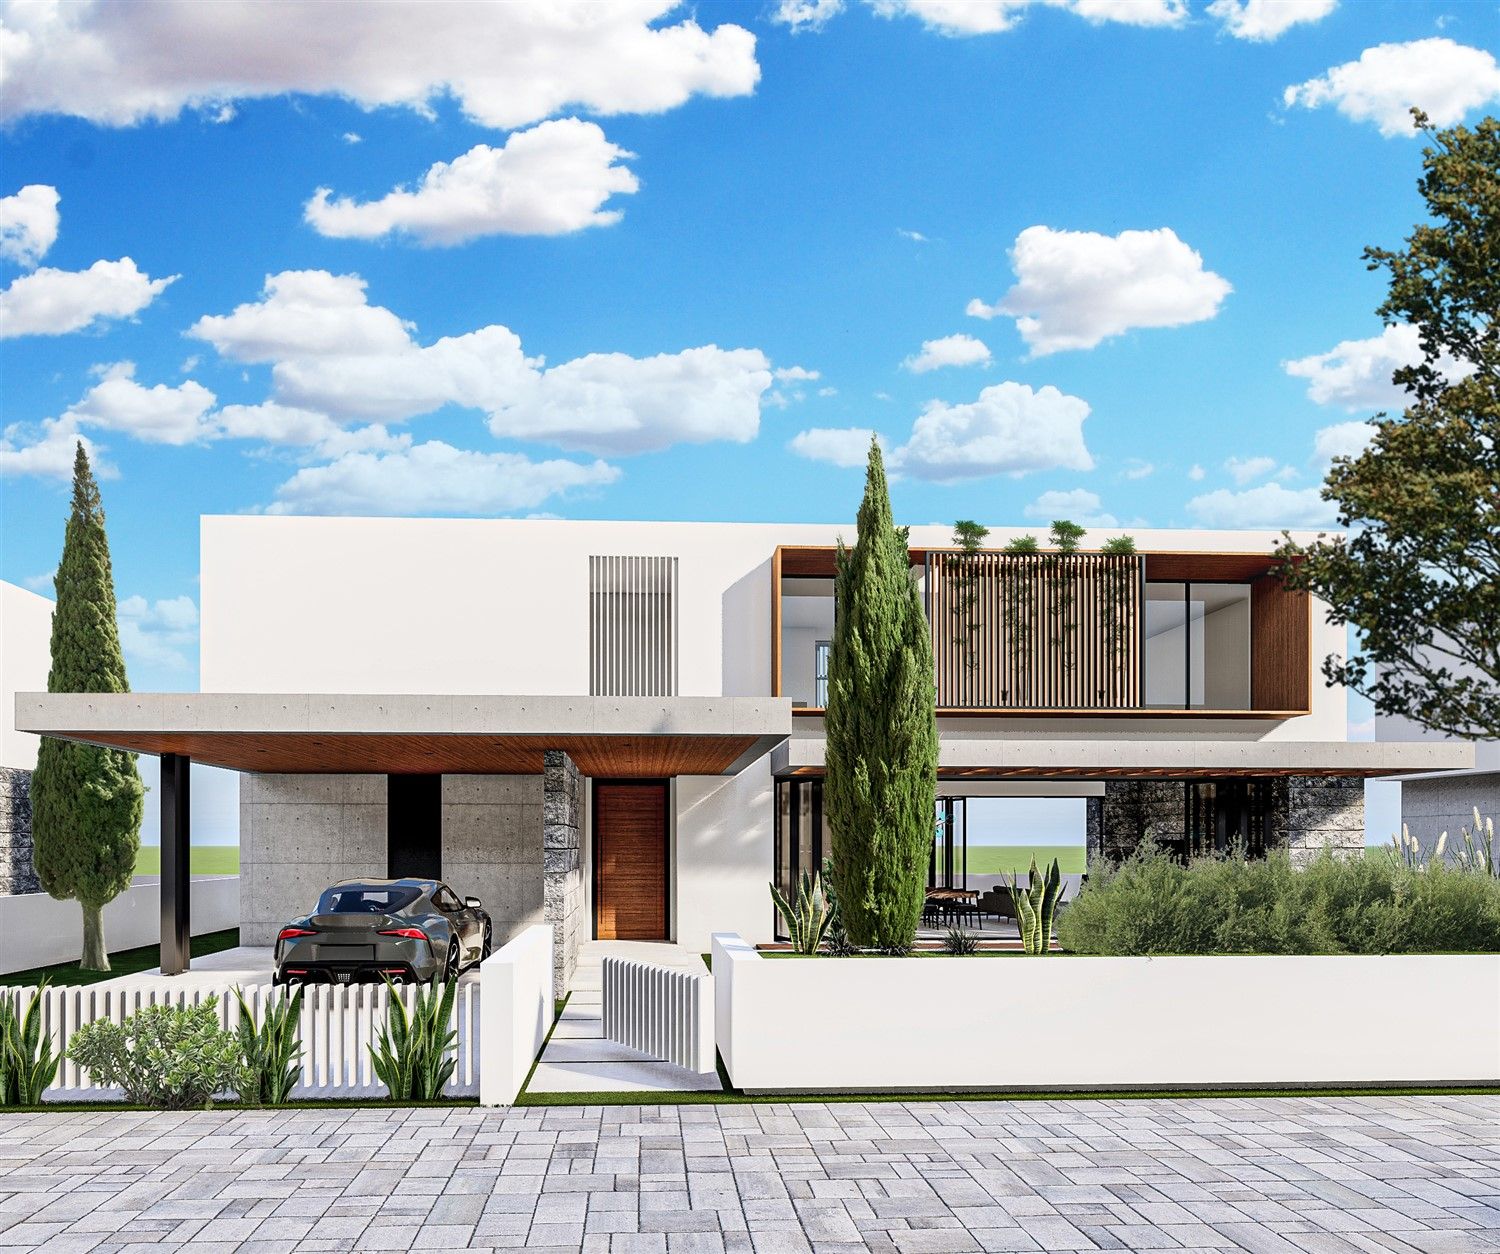 Project of private two-storey villas in Kyrenia